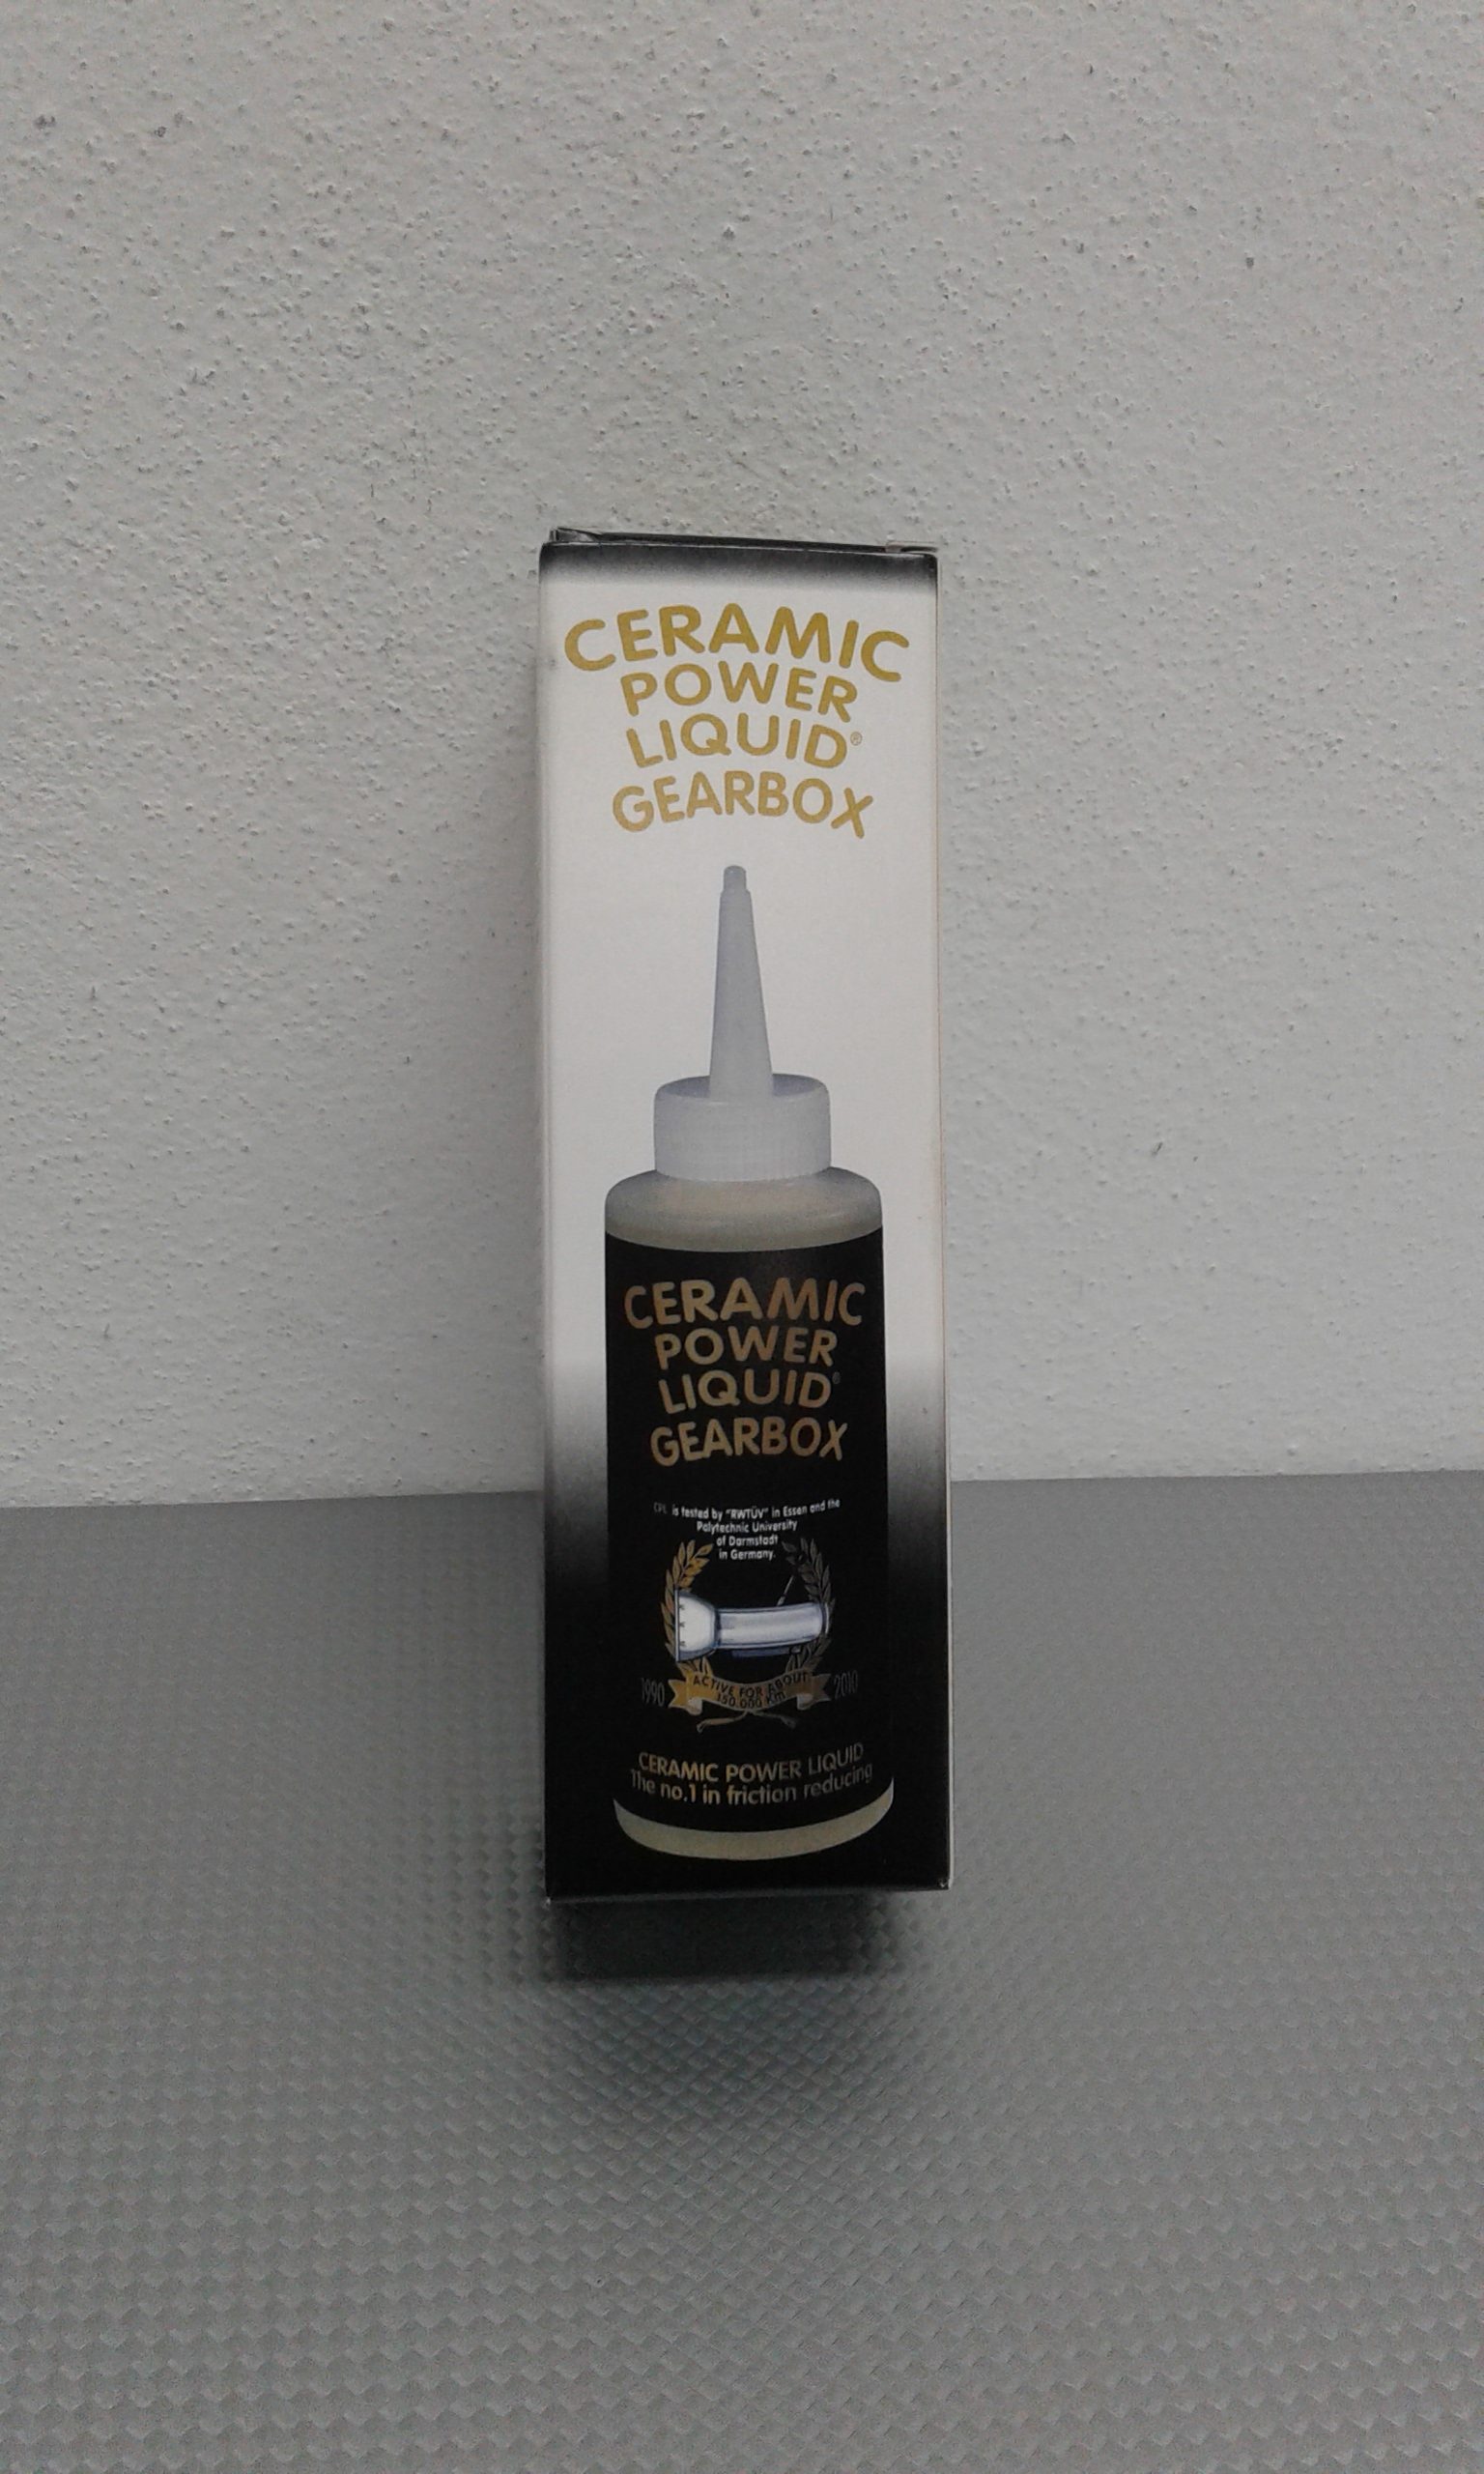 Ceramic power liquid gearbox